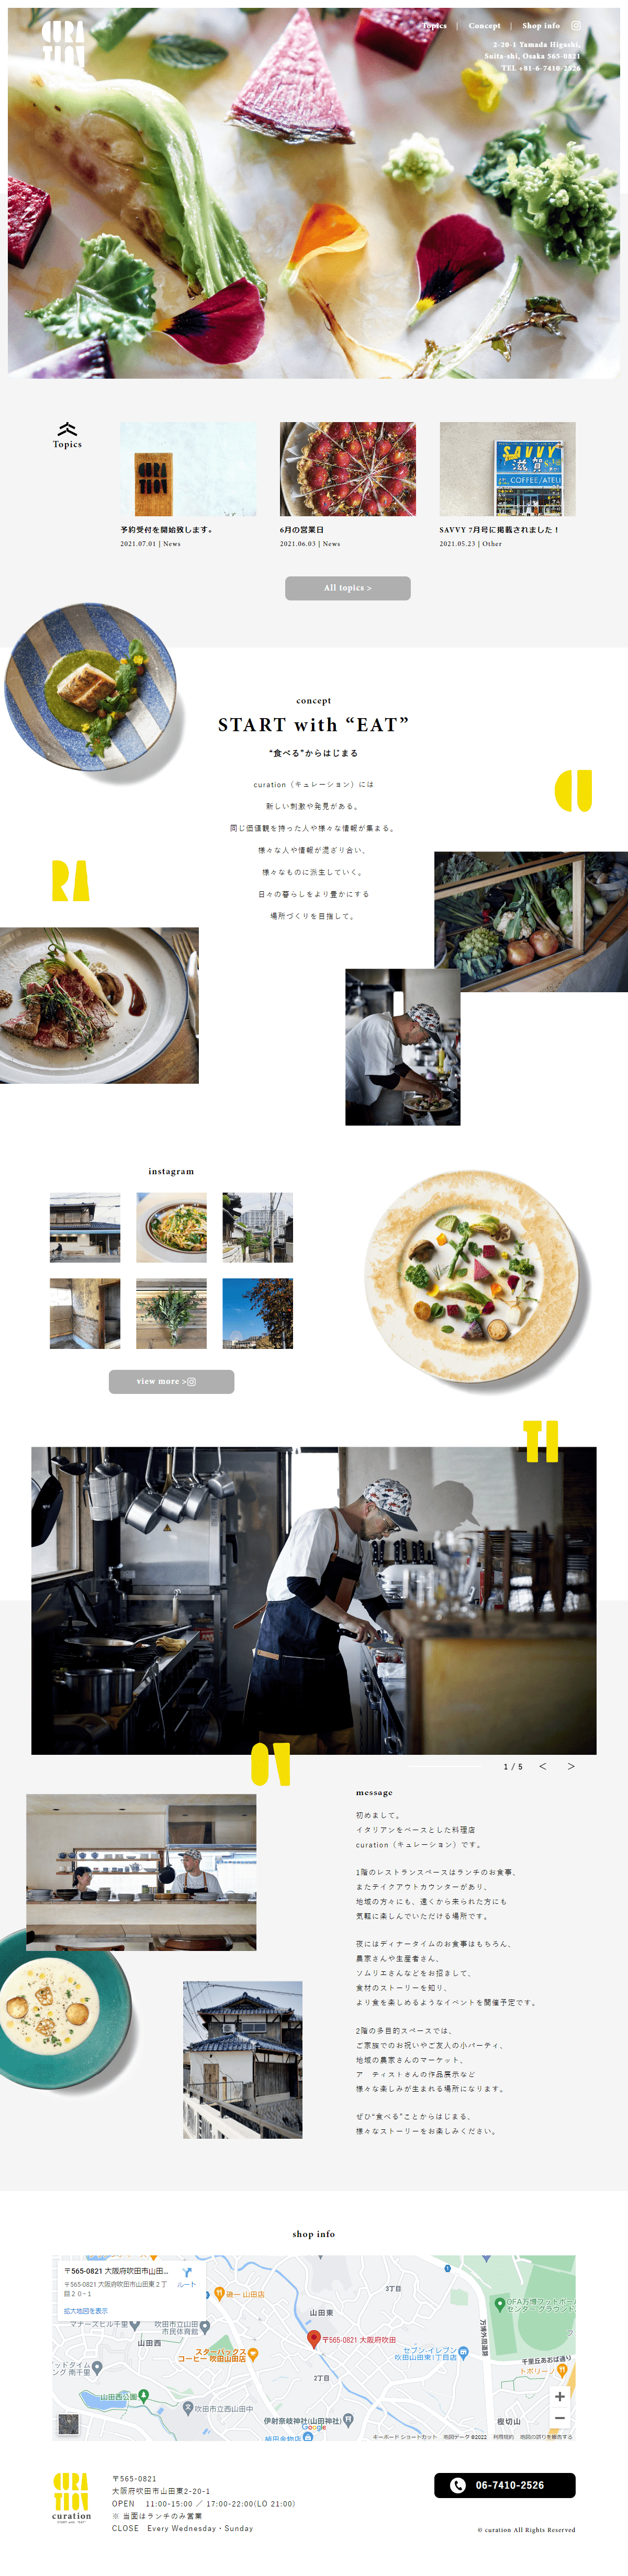 飲食店・カフェ ホームページ制作 WEBデザイン参考ギャラリー curation